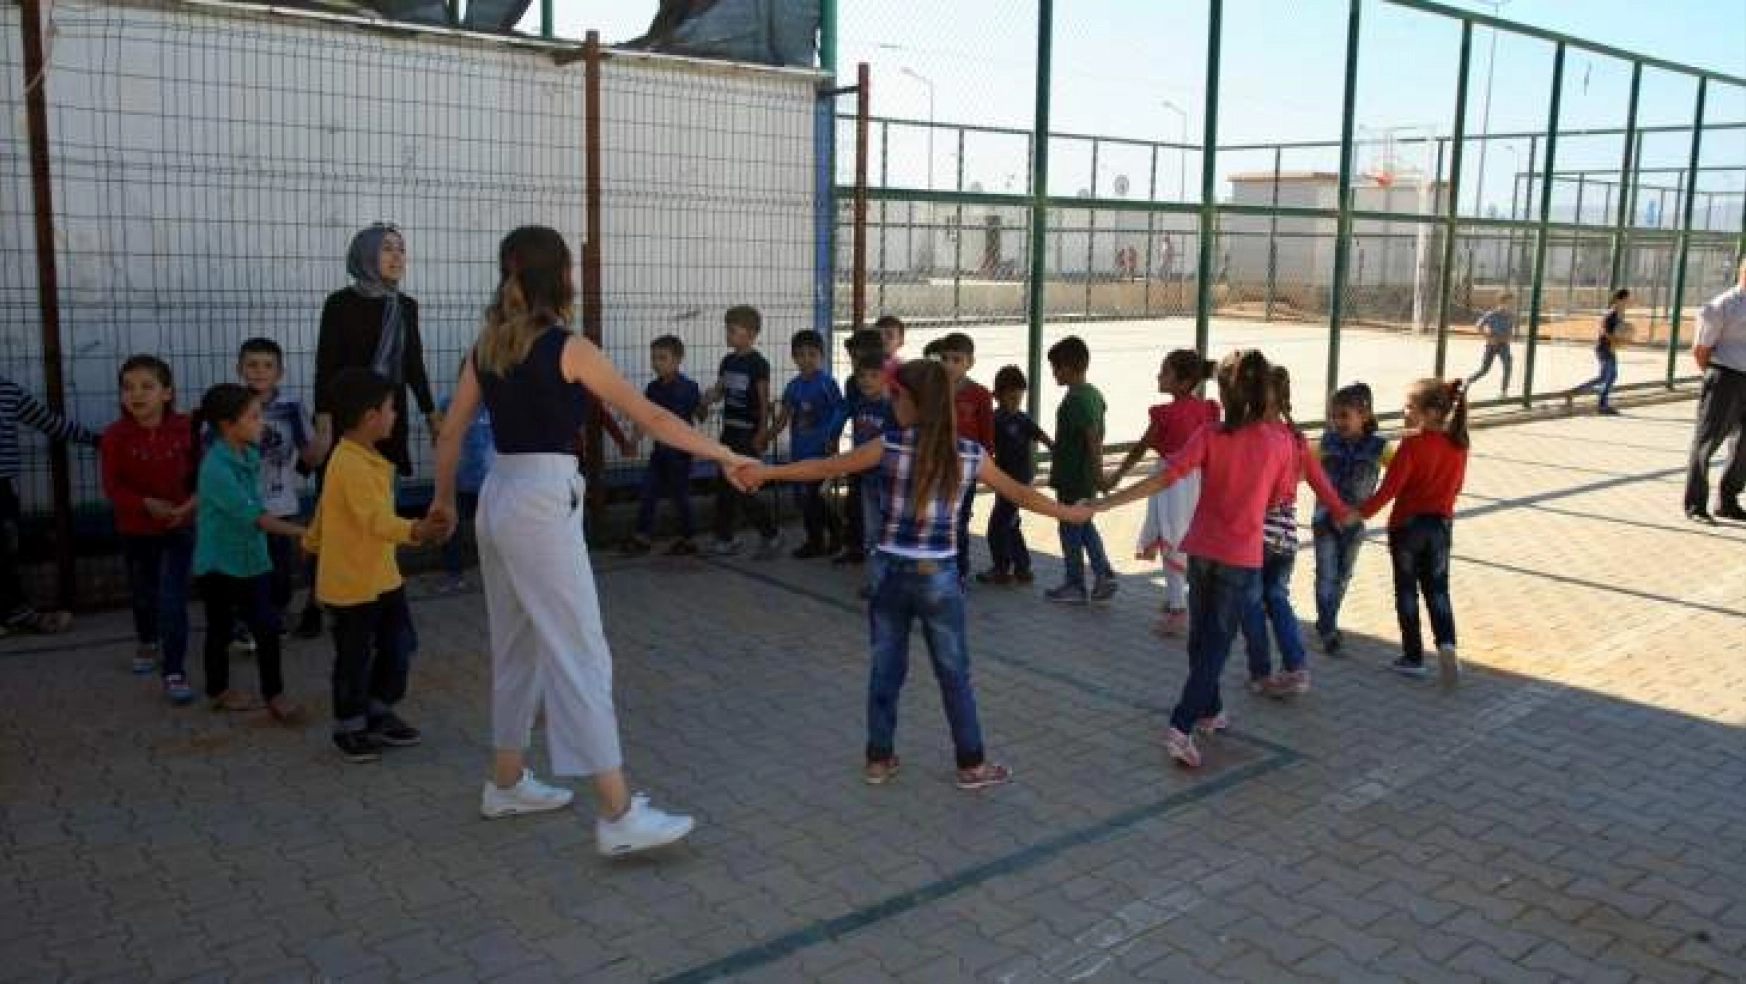 Savaşın çocukları Türkiye'de geleceğe umutla bakıyor